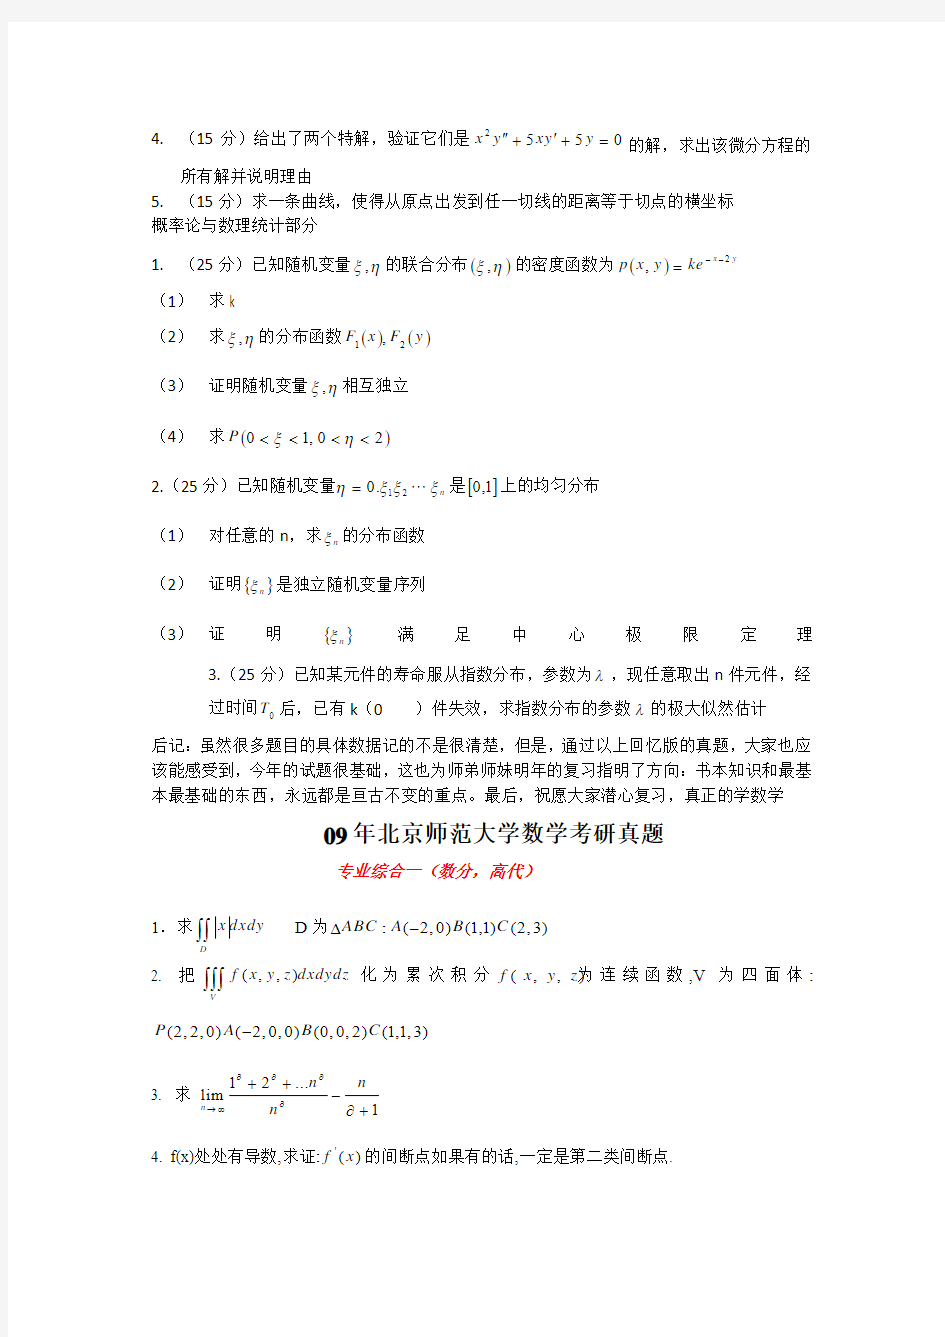 (回忆版)2012年北京师范大学数学科学院硕士生入学考试真题